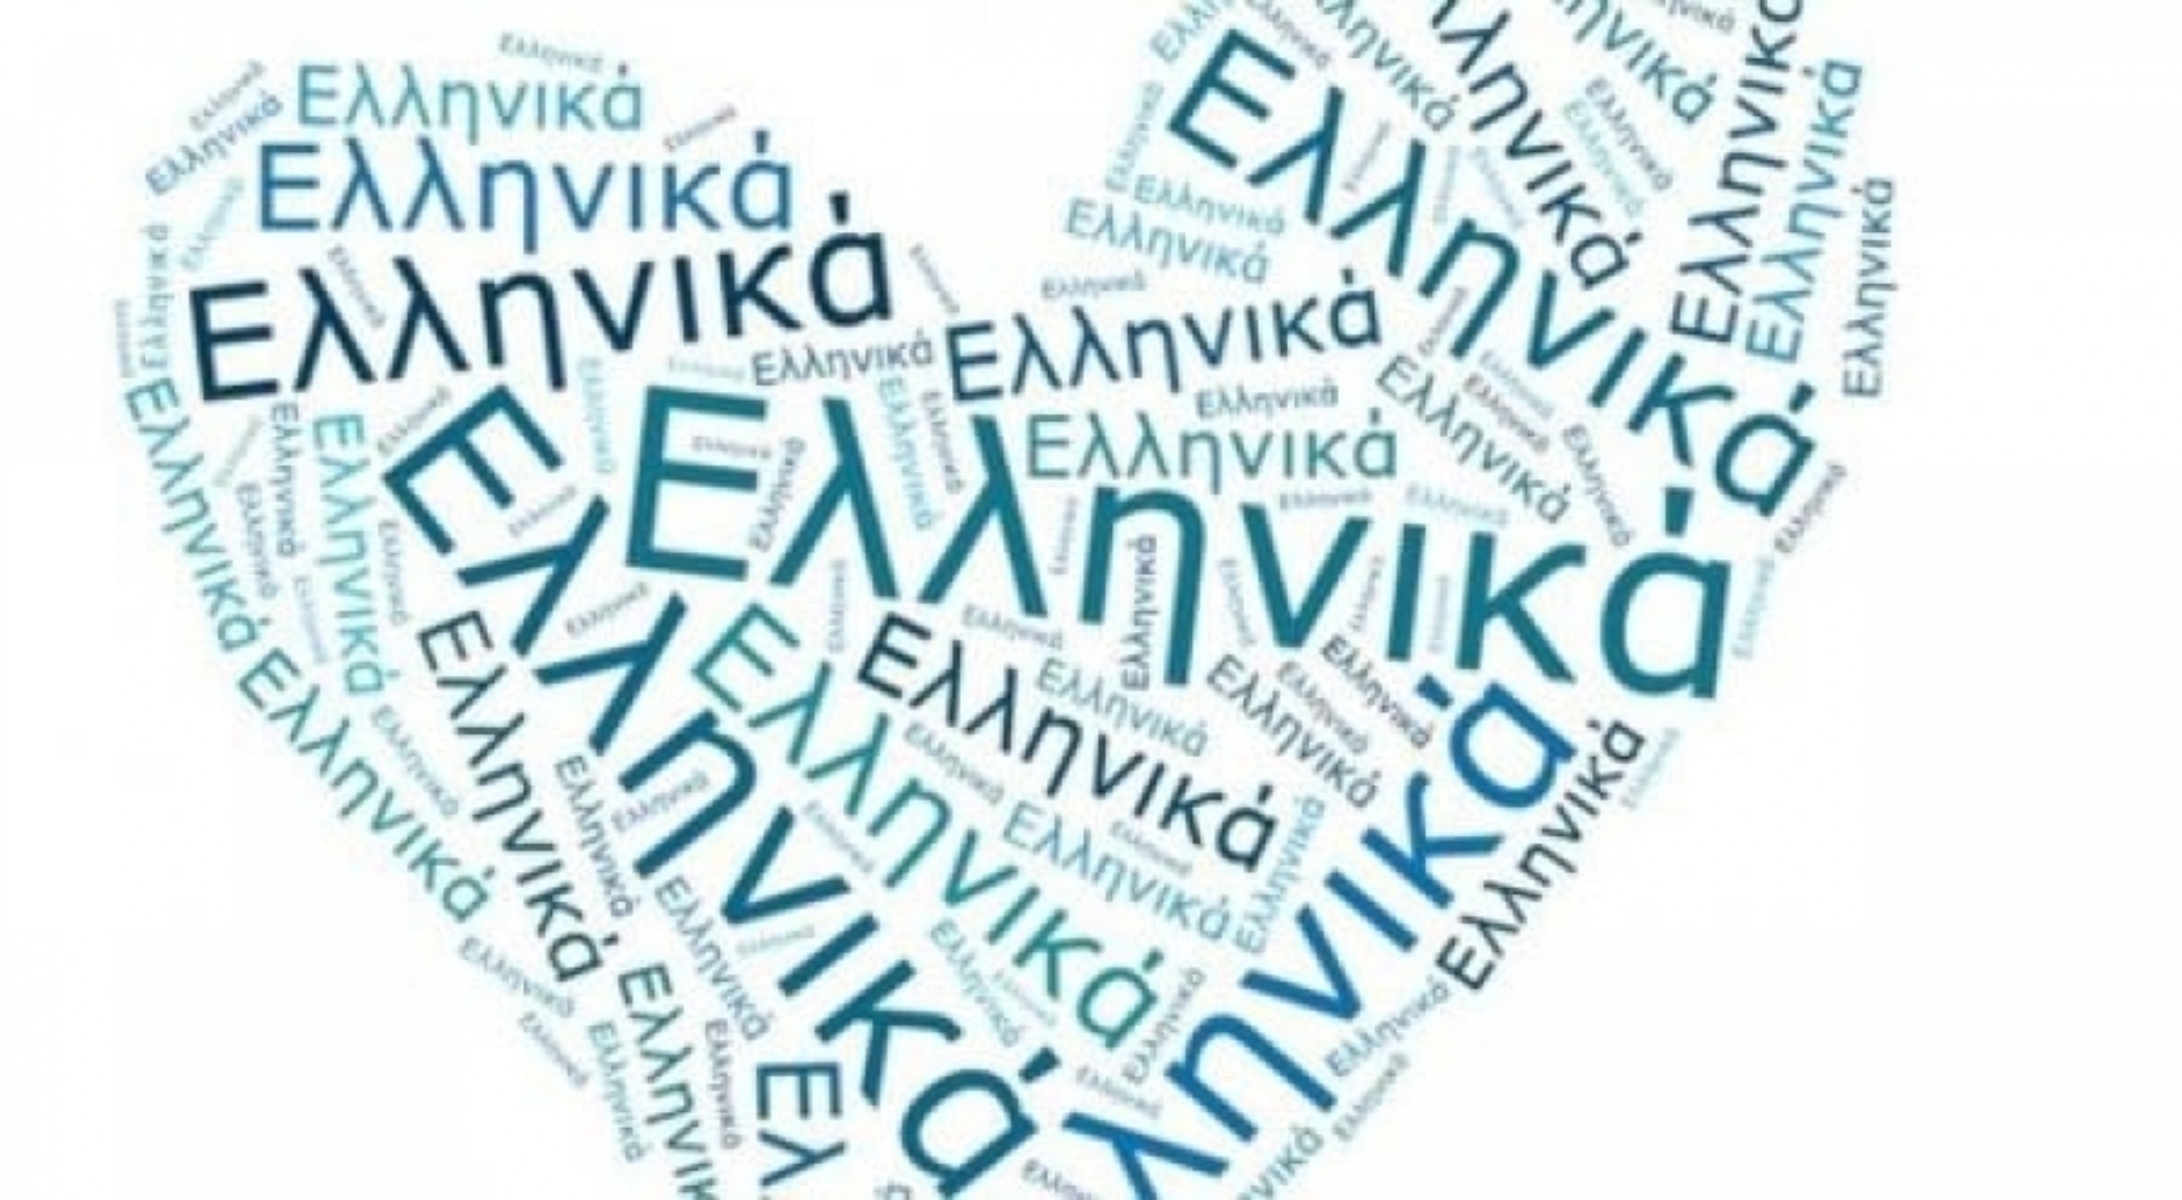 Παγκόσμια Ημέρα Ελληνικής Γλώσσας: Πανεπιστήμιο της Άγκυρας ακύρωσε την εκδήλωση